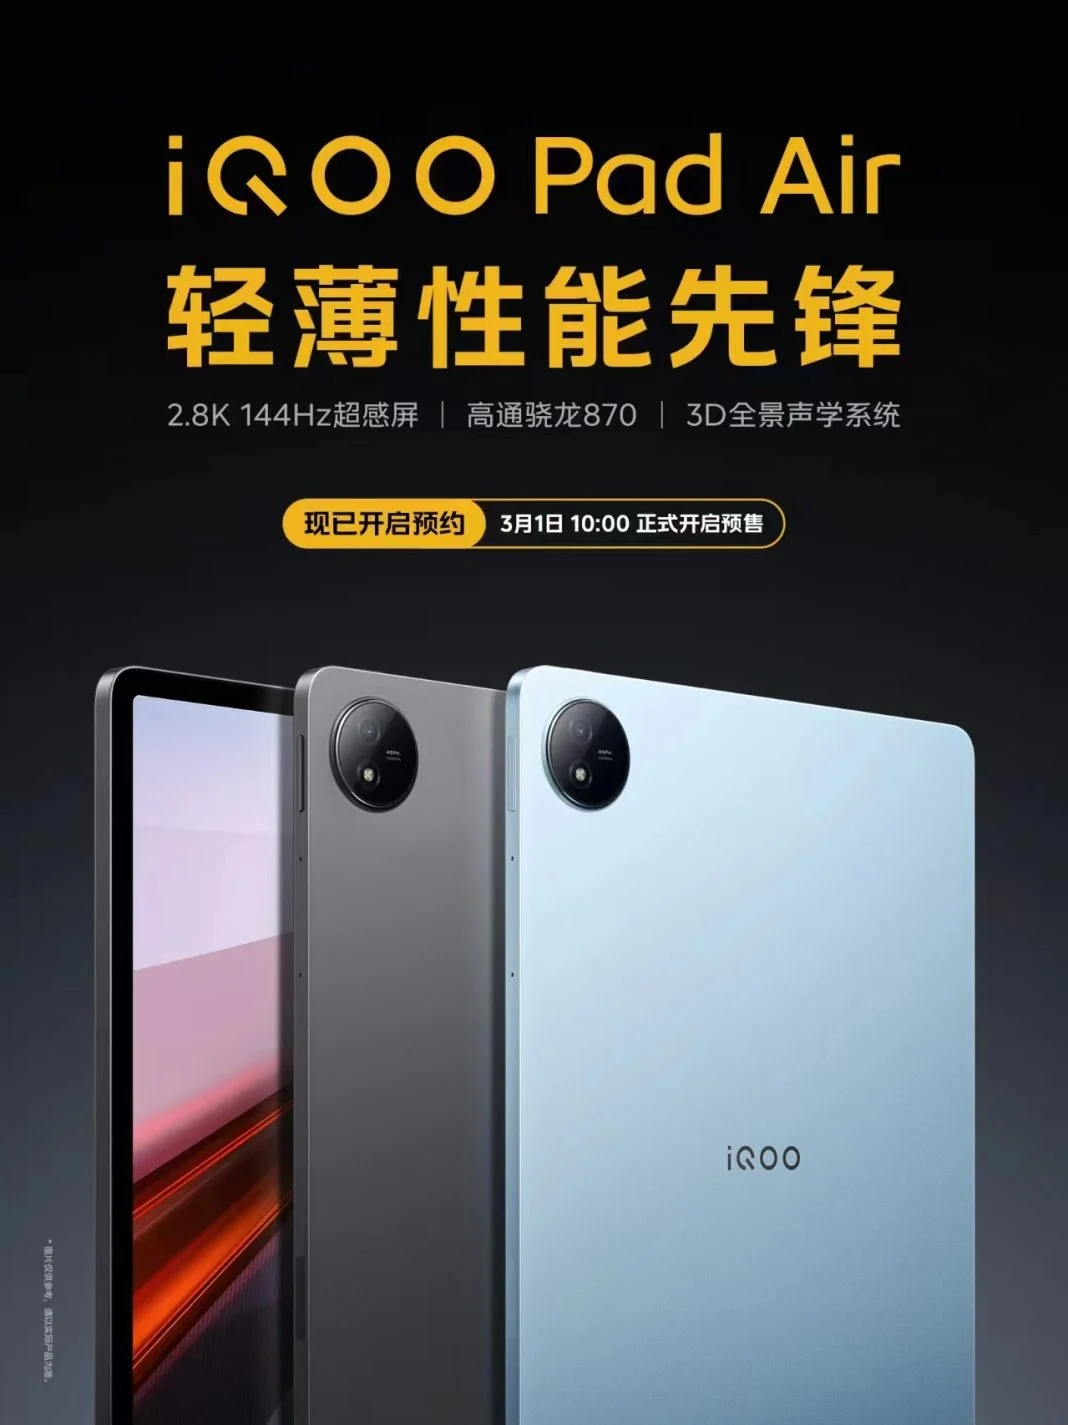 تبلت iQOO Pad Air به همراه ایربادز iQOO TWS 2 معرفی شد